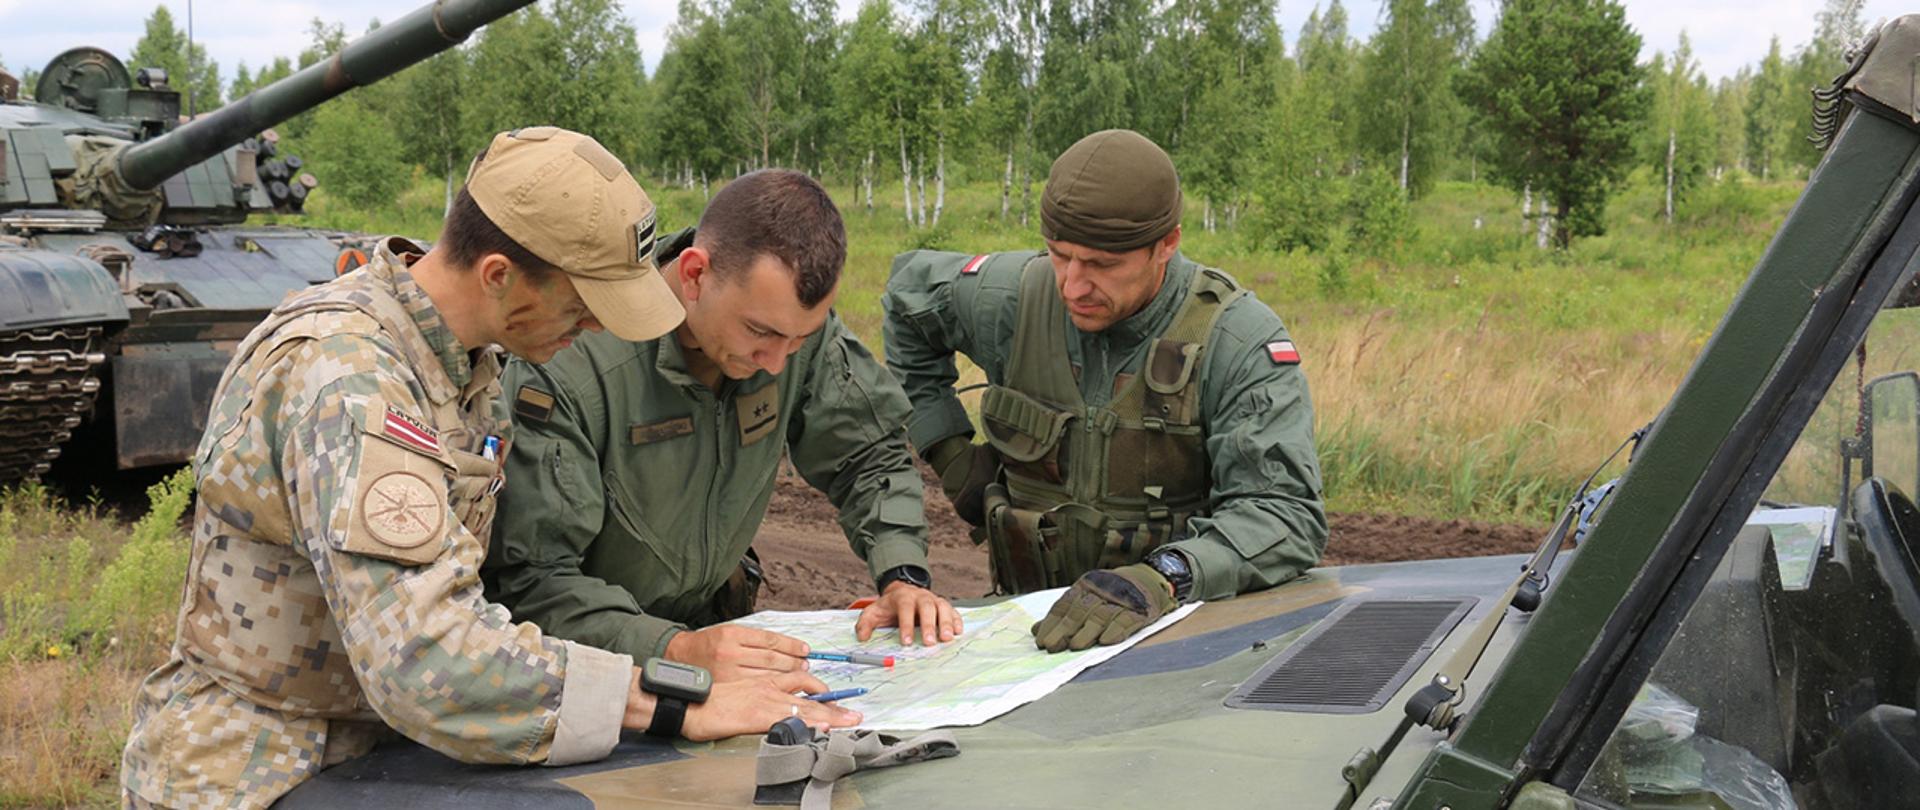 Żołnierze Łotewscy i Polscy sprawdzają swoje położenie na mapie. W tle zieleń oraz sprzęt wojskowy.